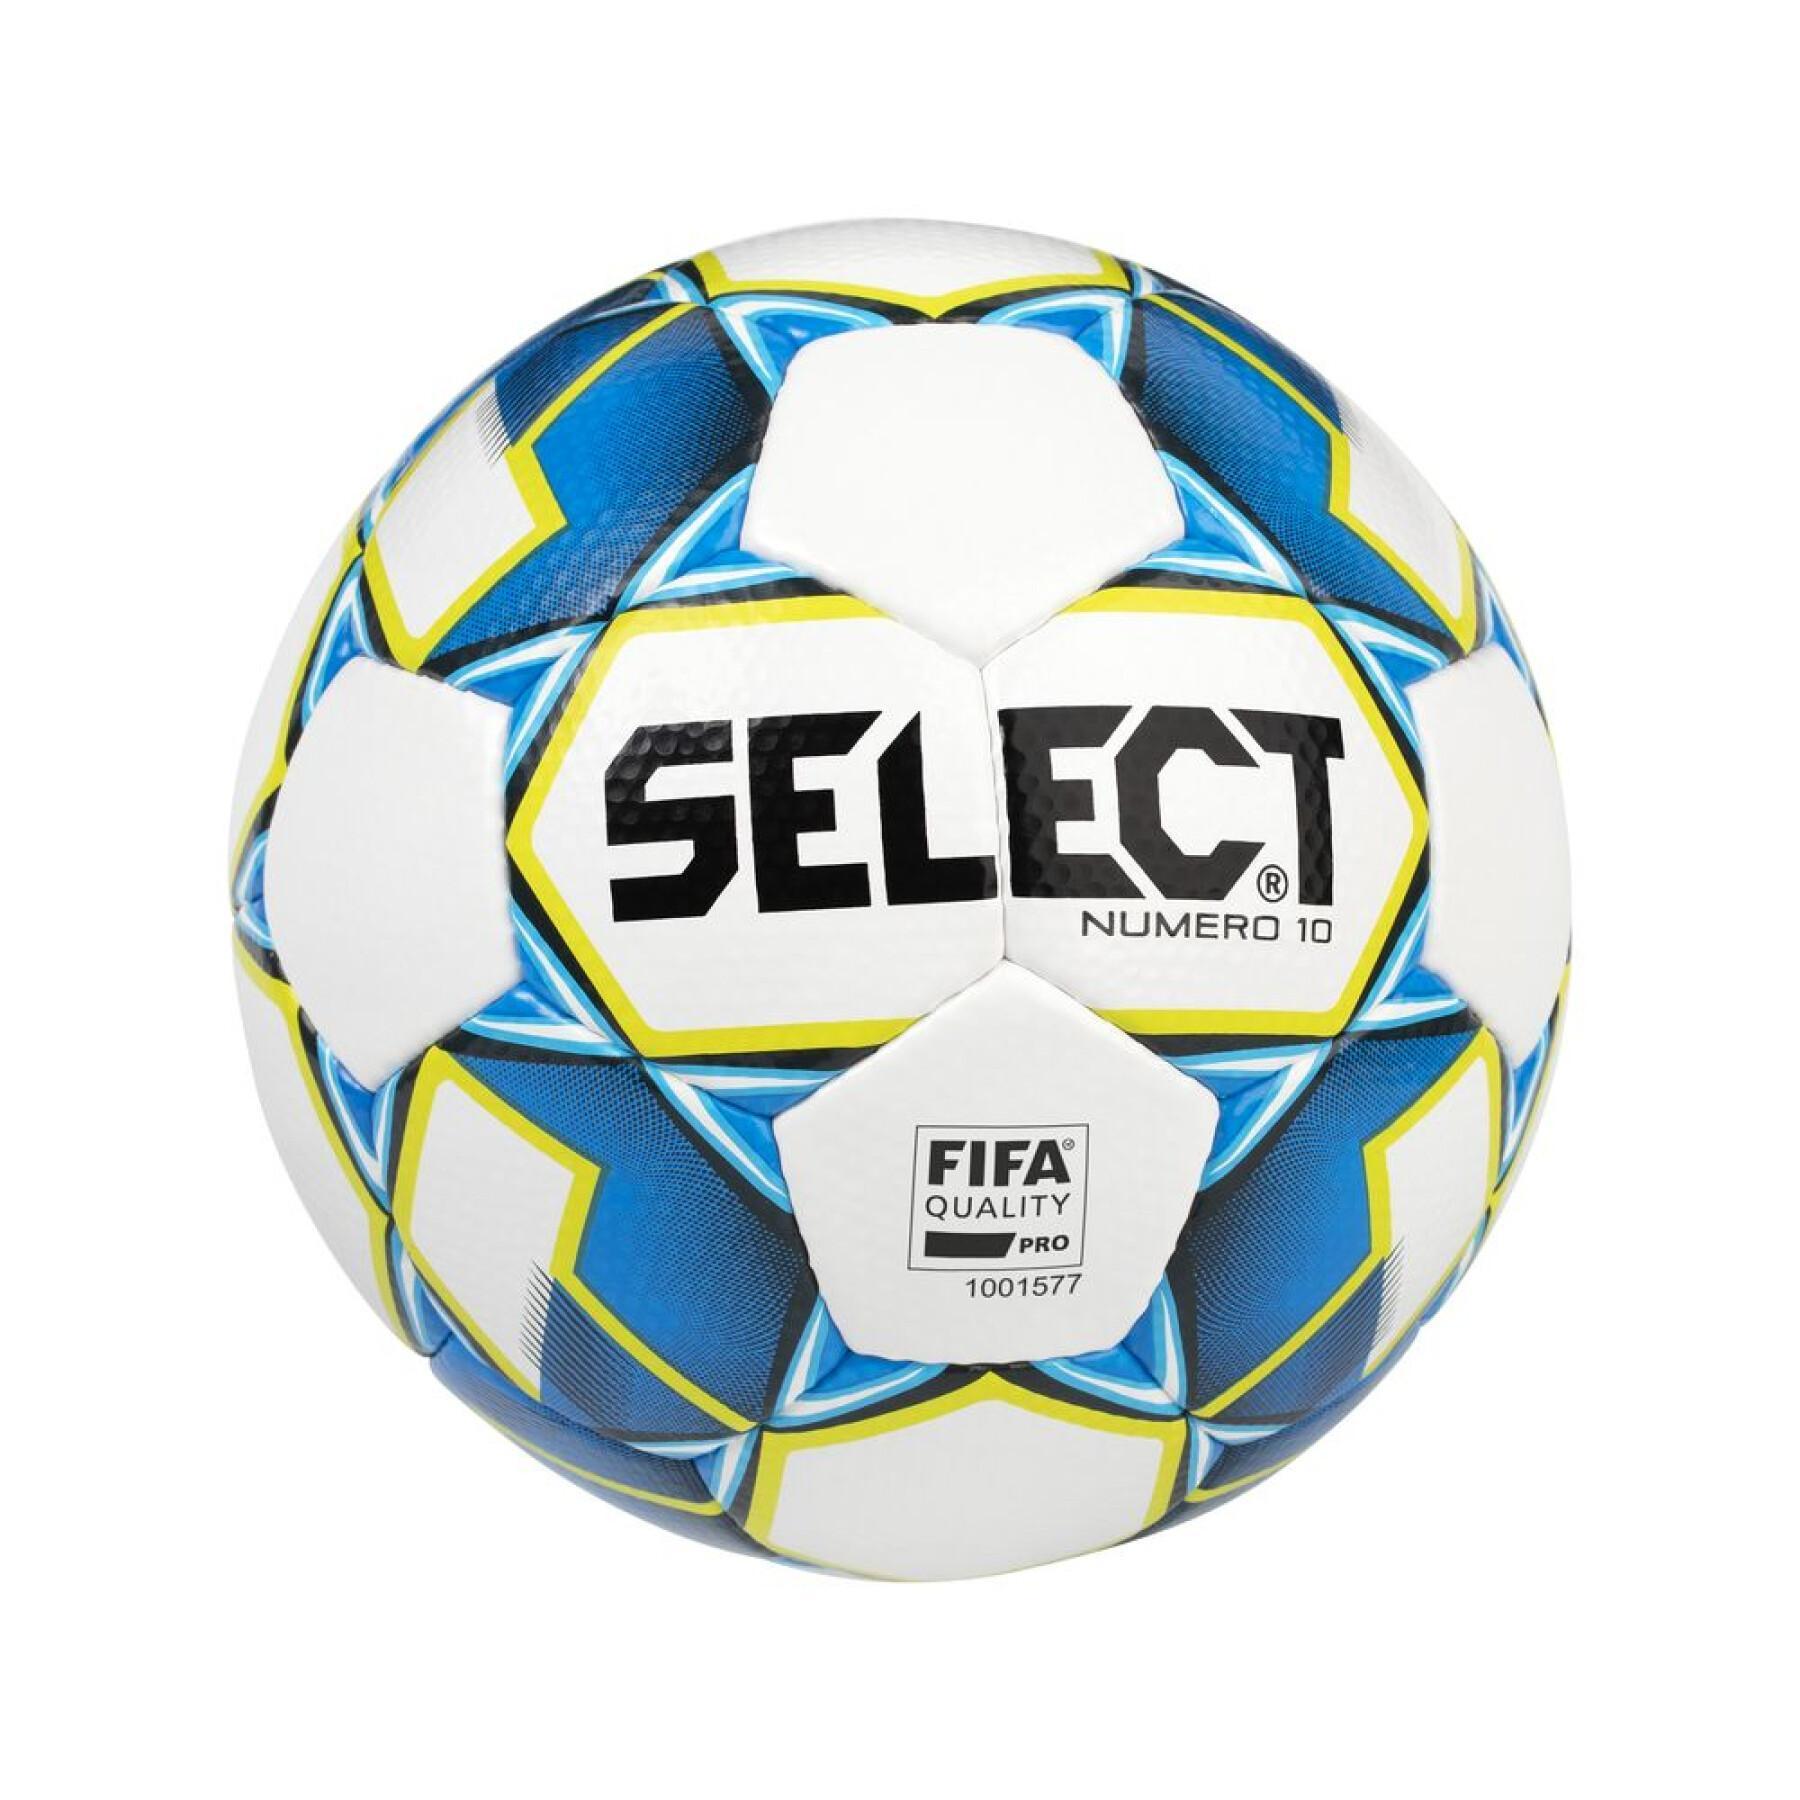 Ballong Select numéro 10 FIFA